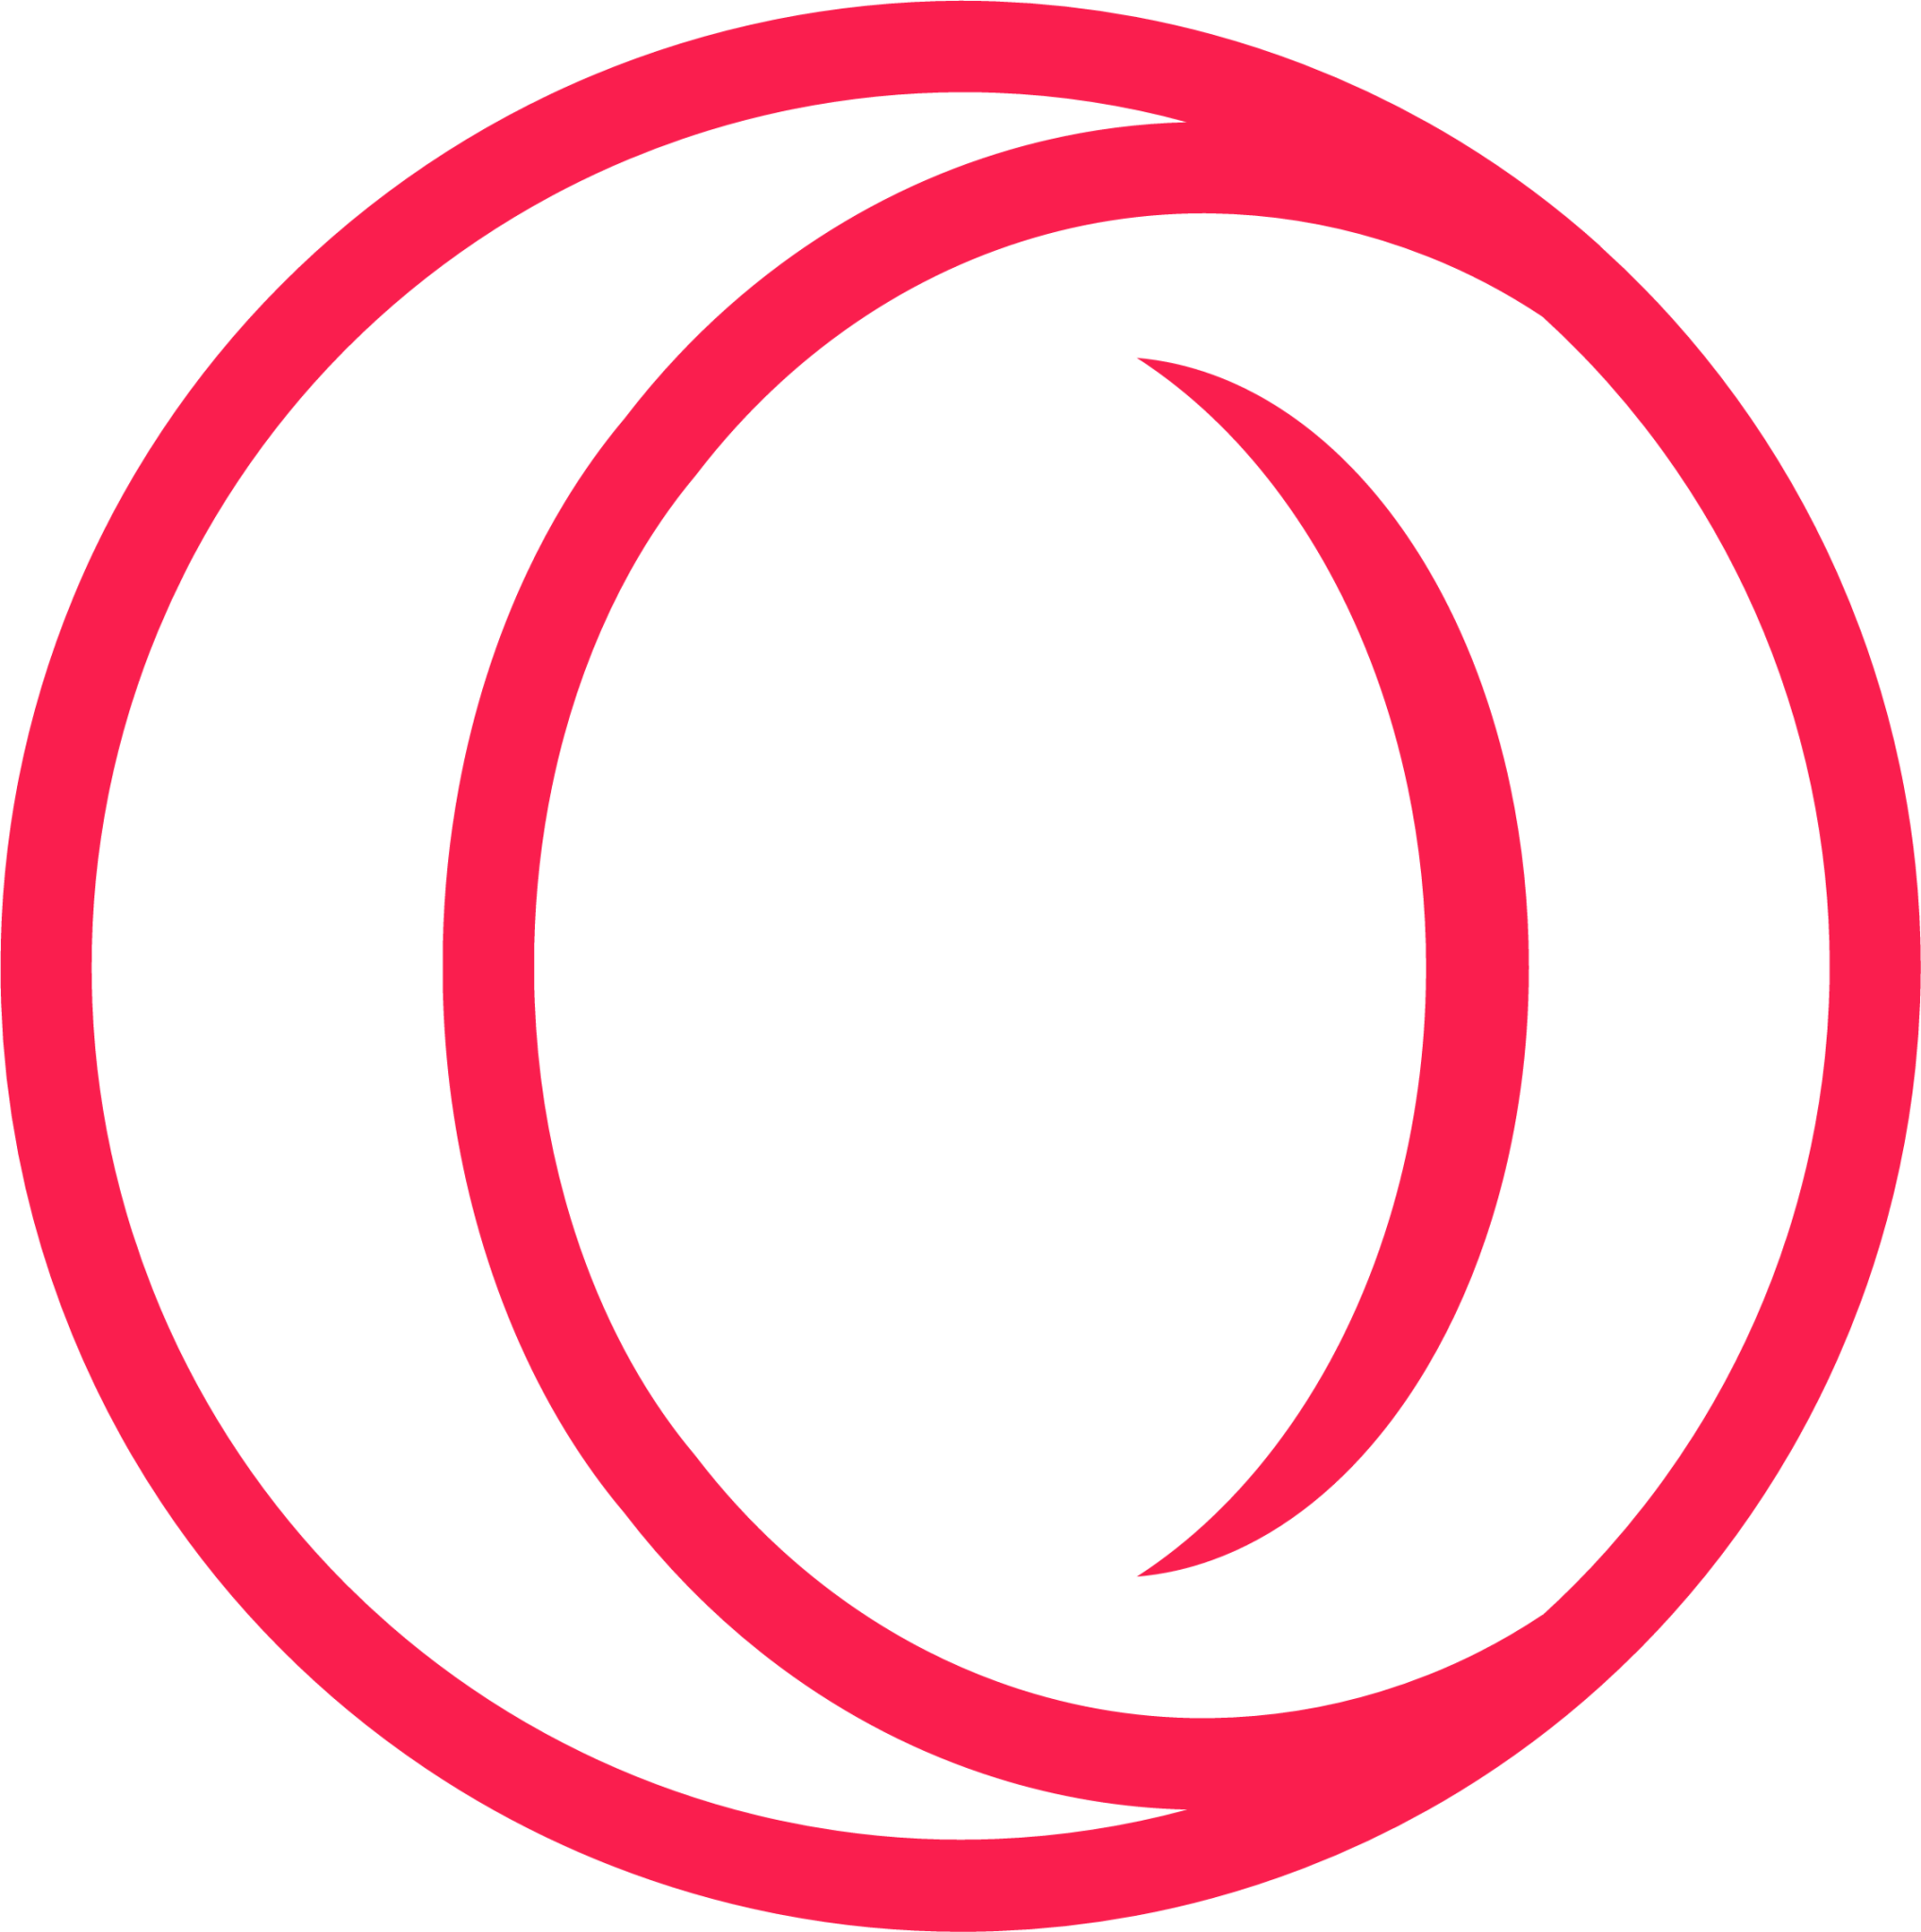 Логотип Opera GX